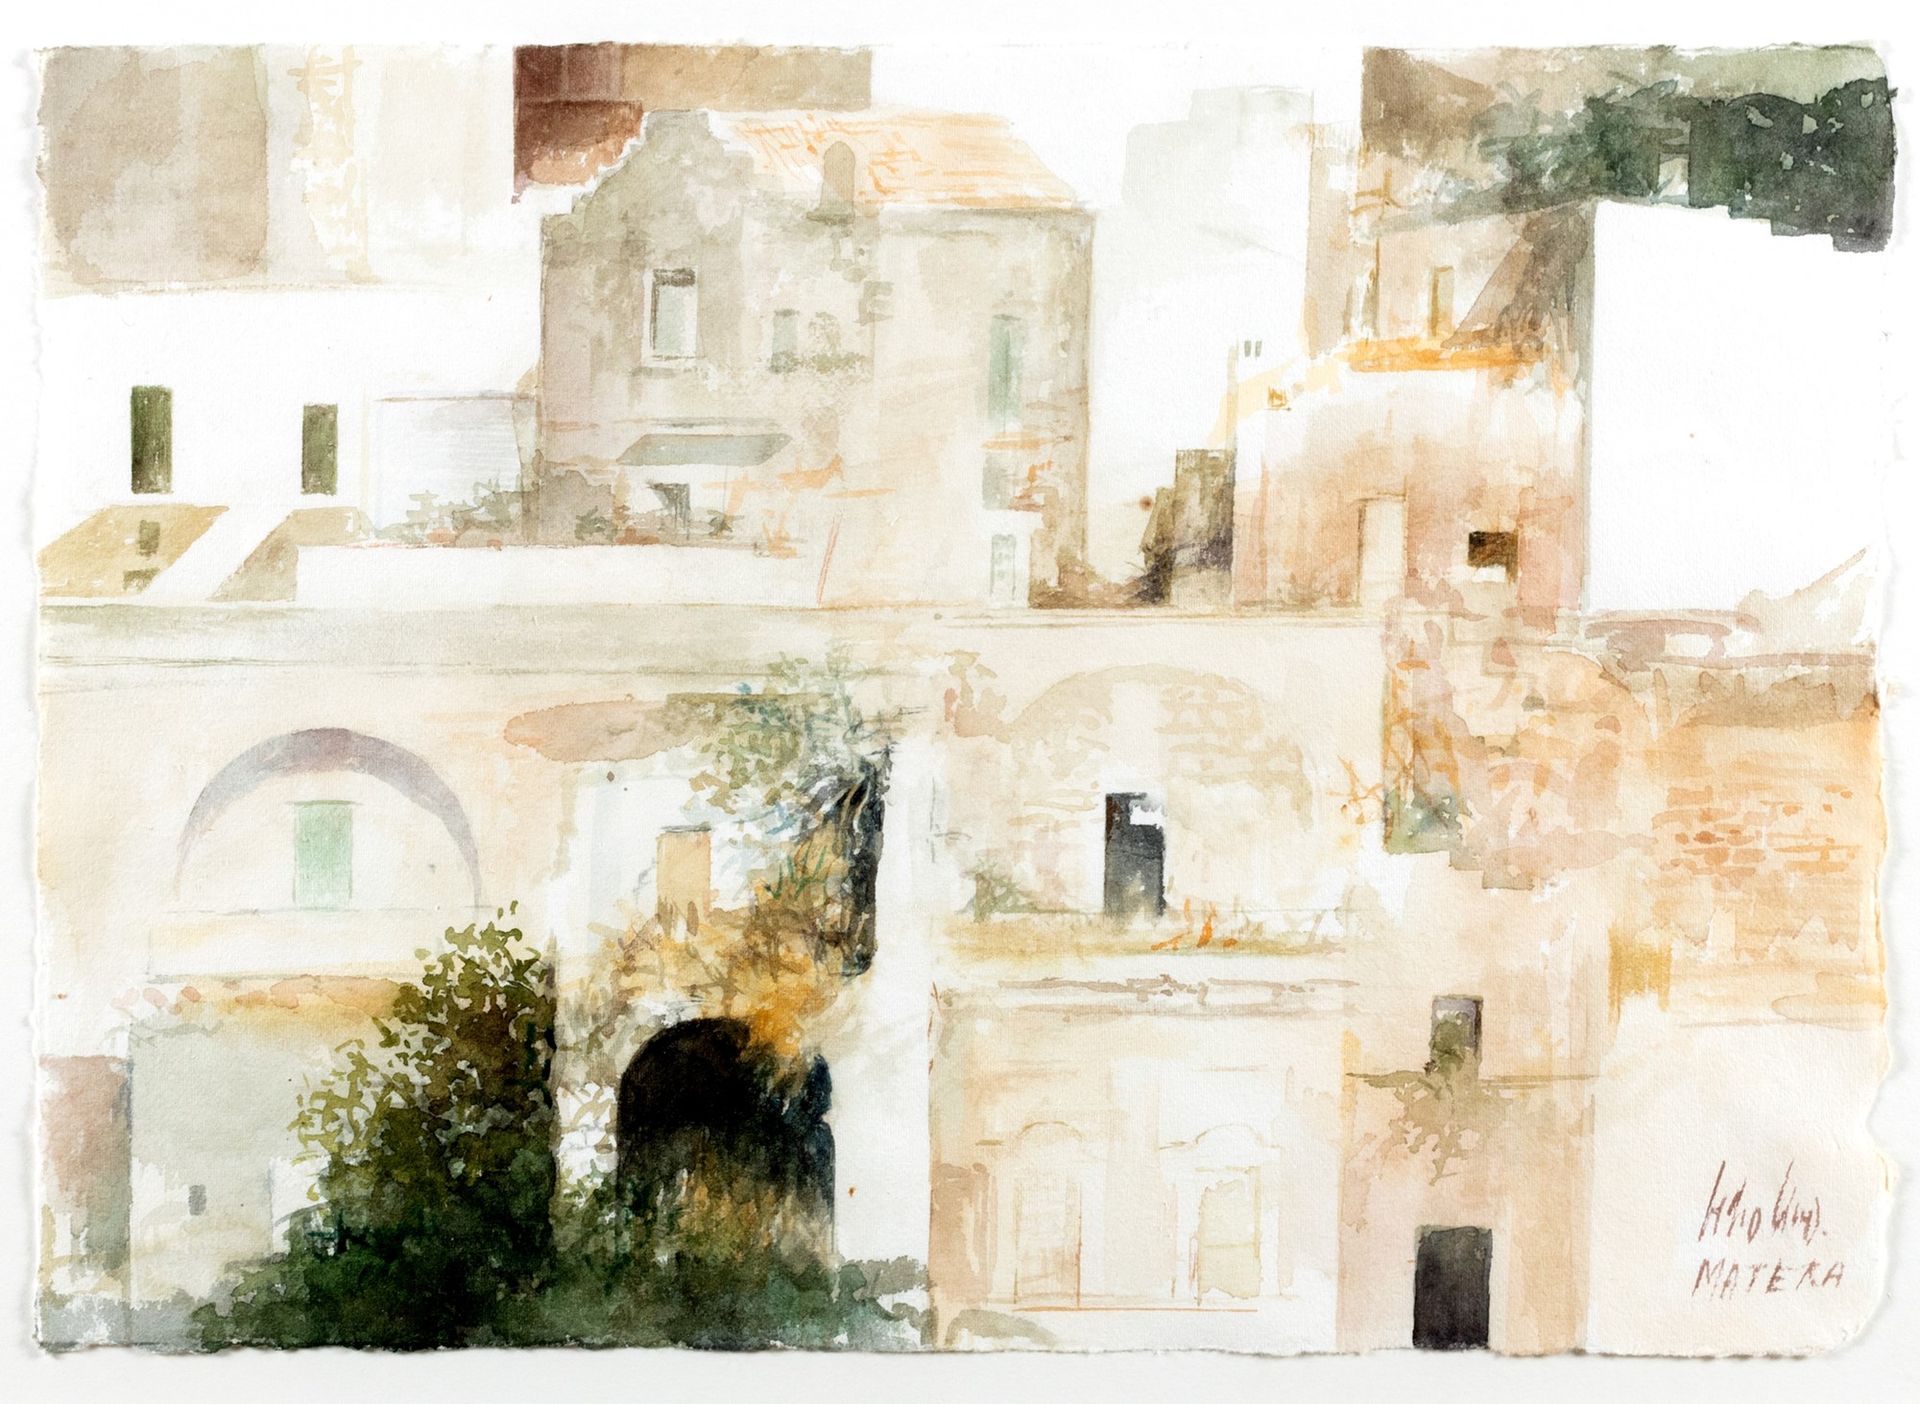 Pedro Cano Matera

watercolor on paper
24.5 x 35 cm
Signed lower right: Pedro Ca&hellip;